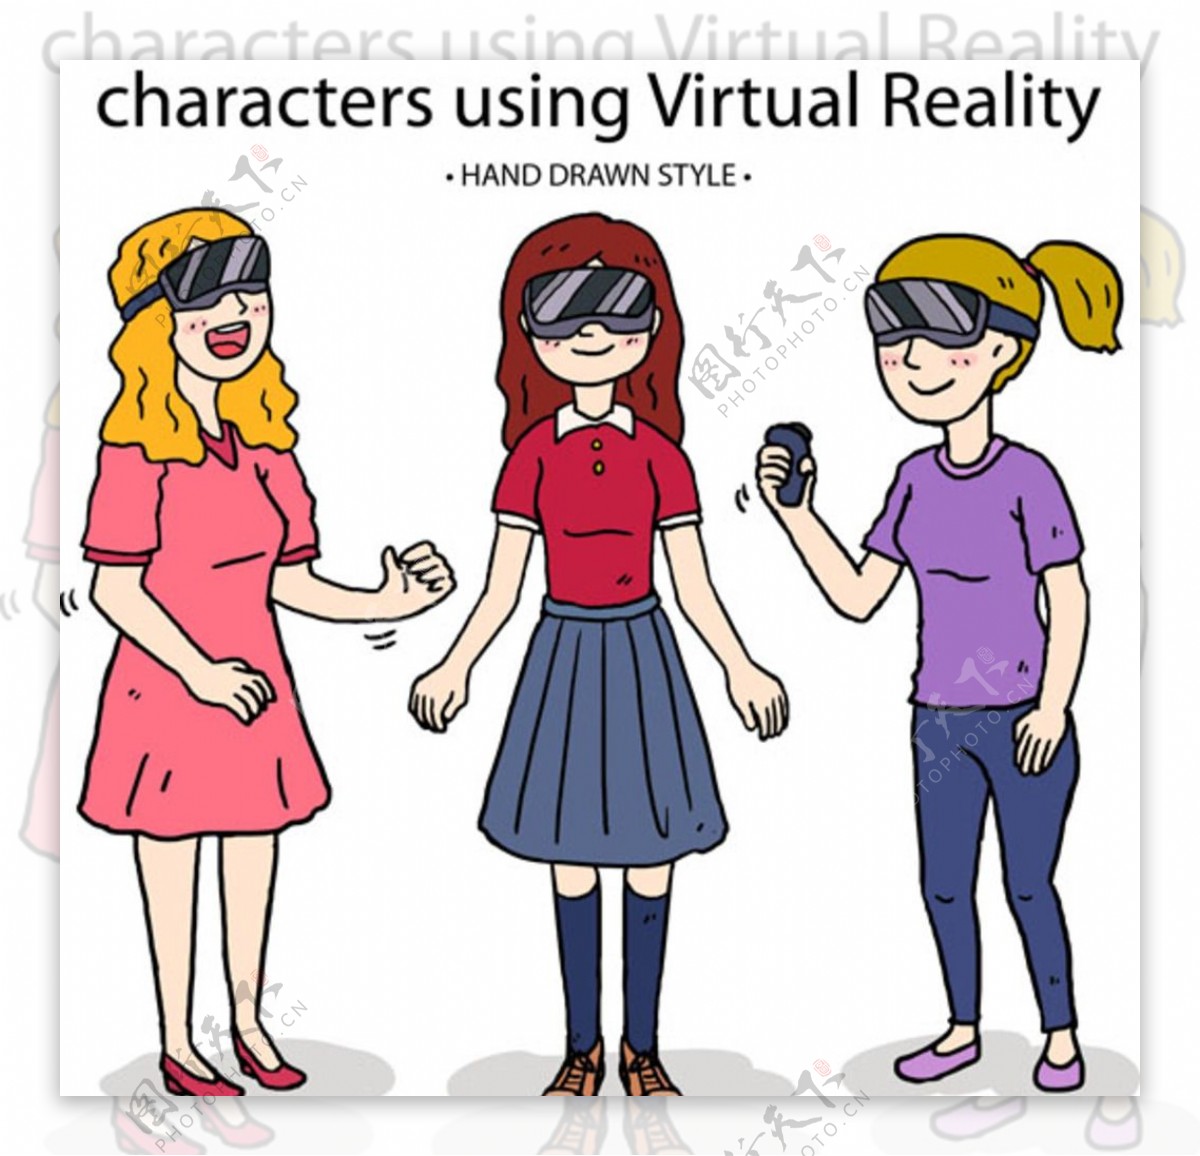 戴VR虚拟现实眼镜的女生